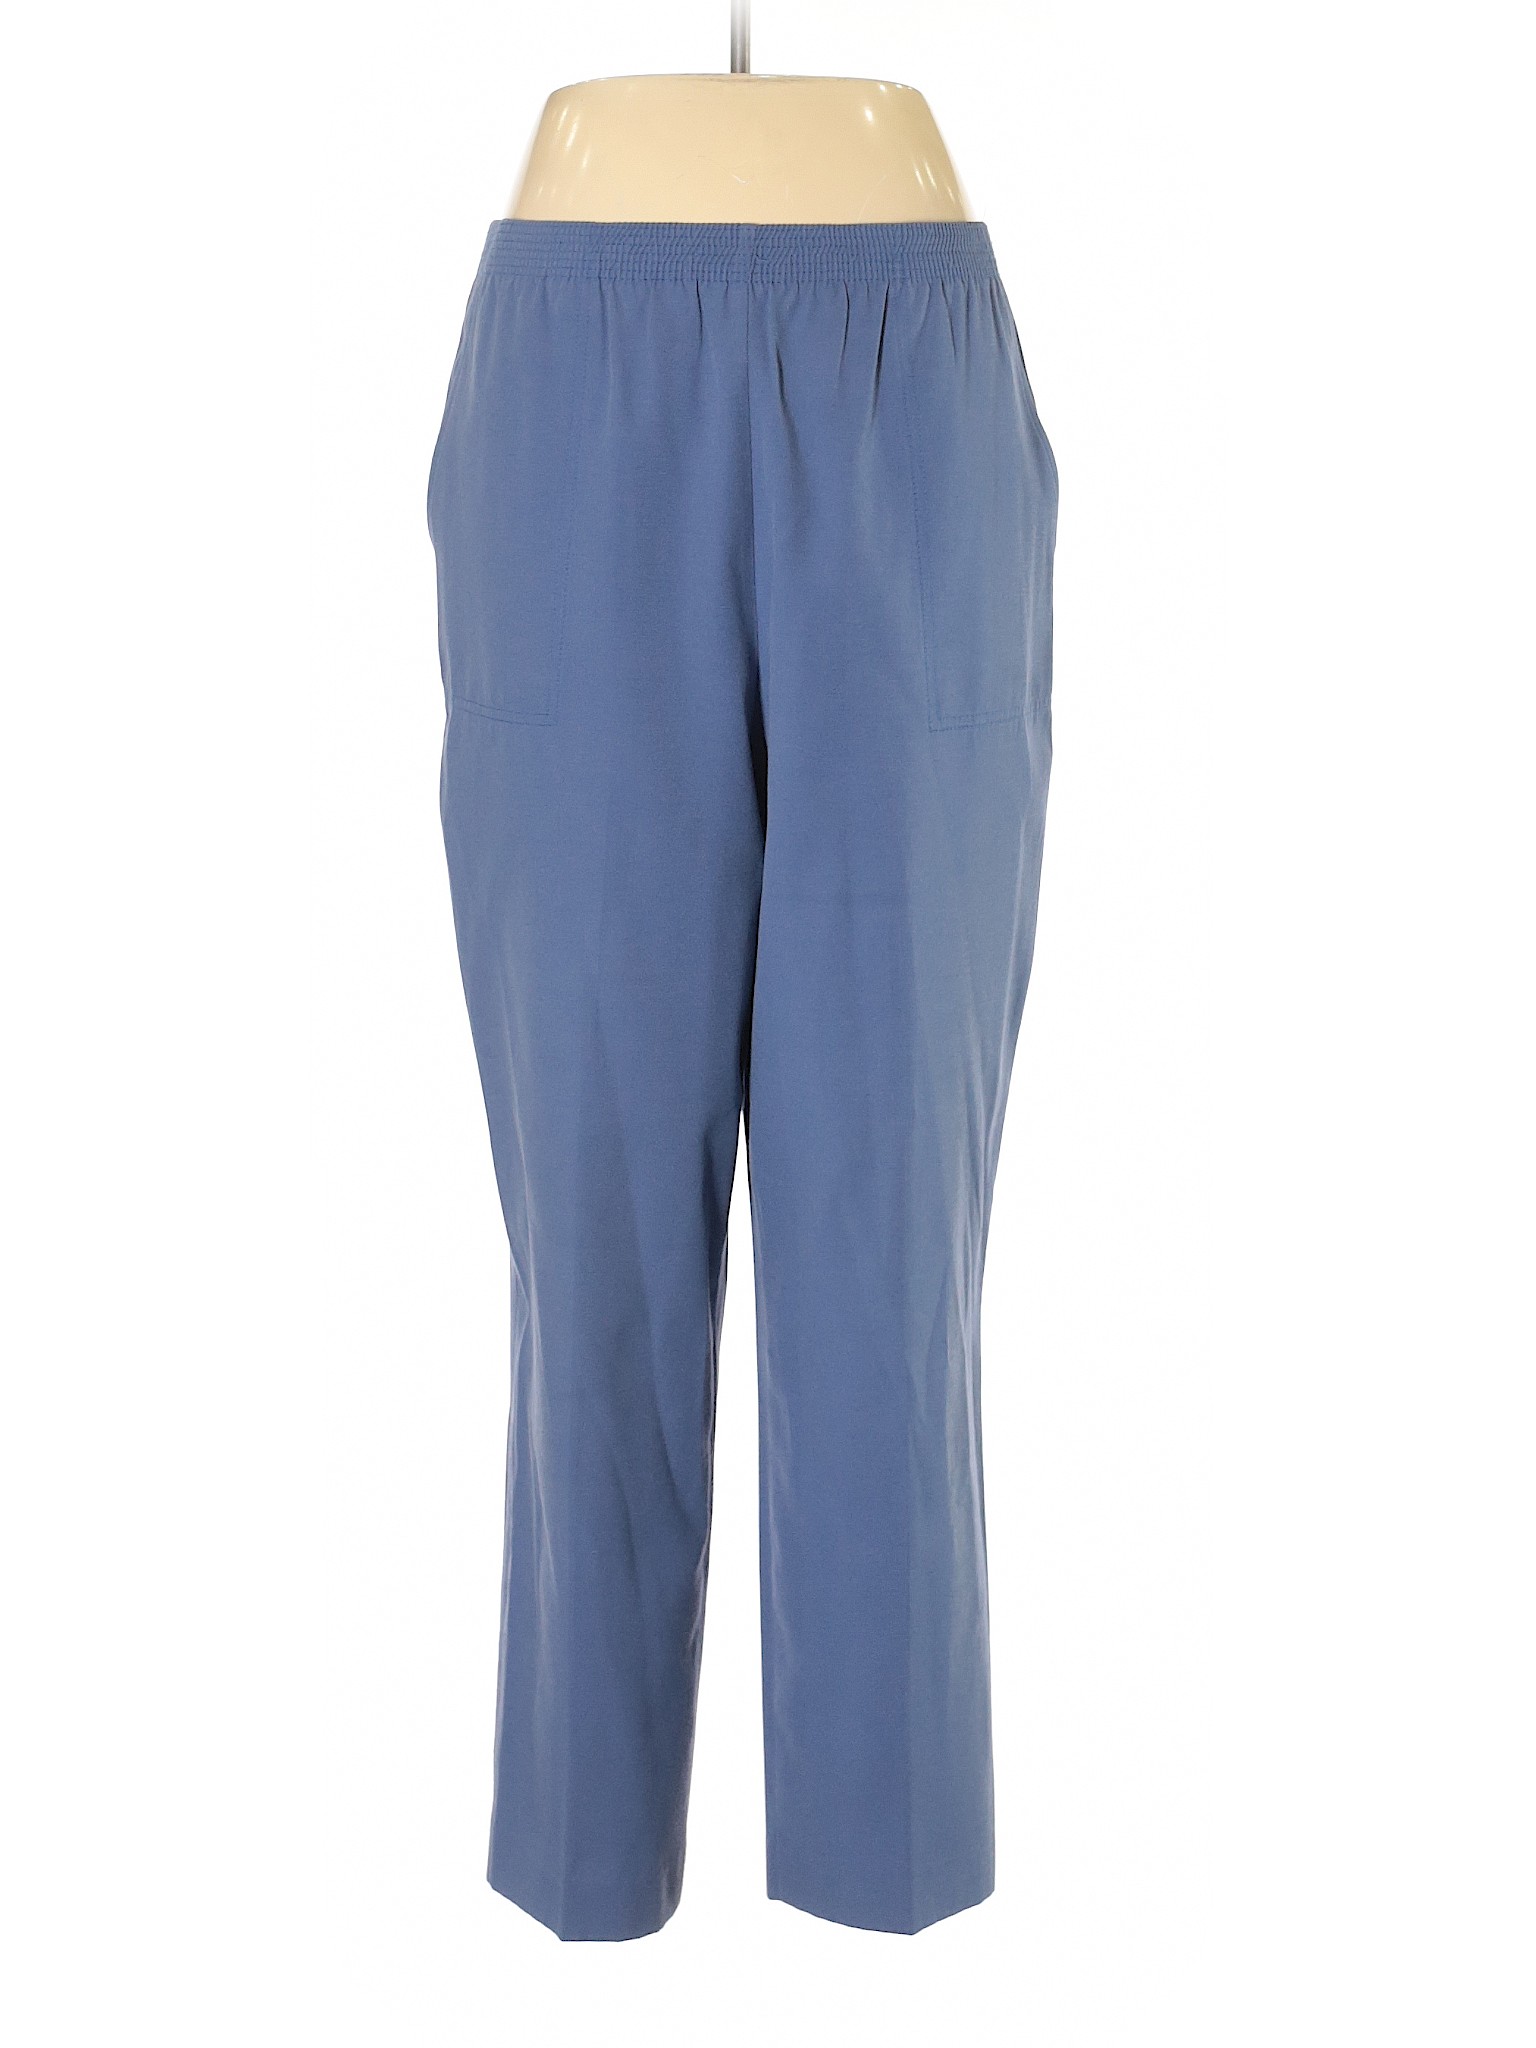 TanJay Women Blue Casual Pants 12 | eBay